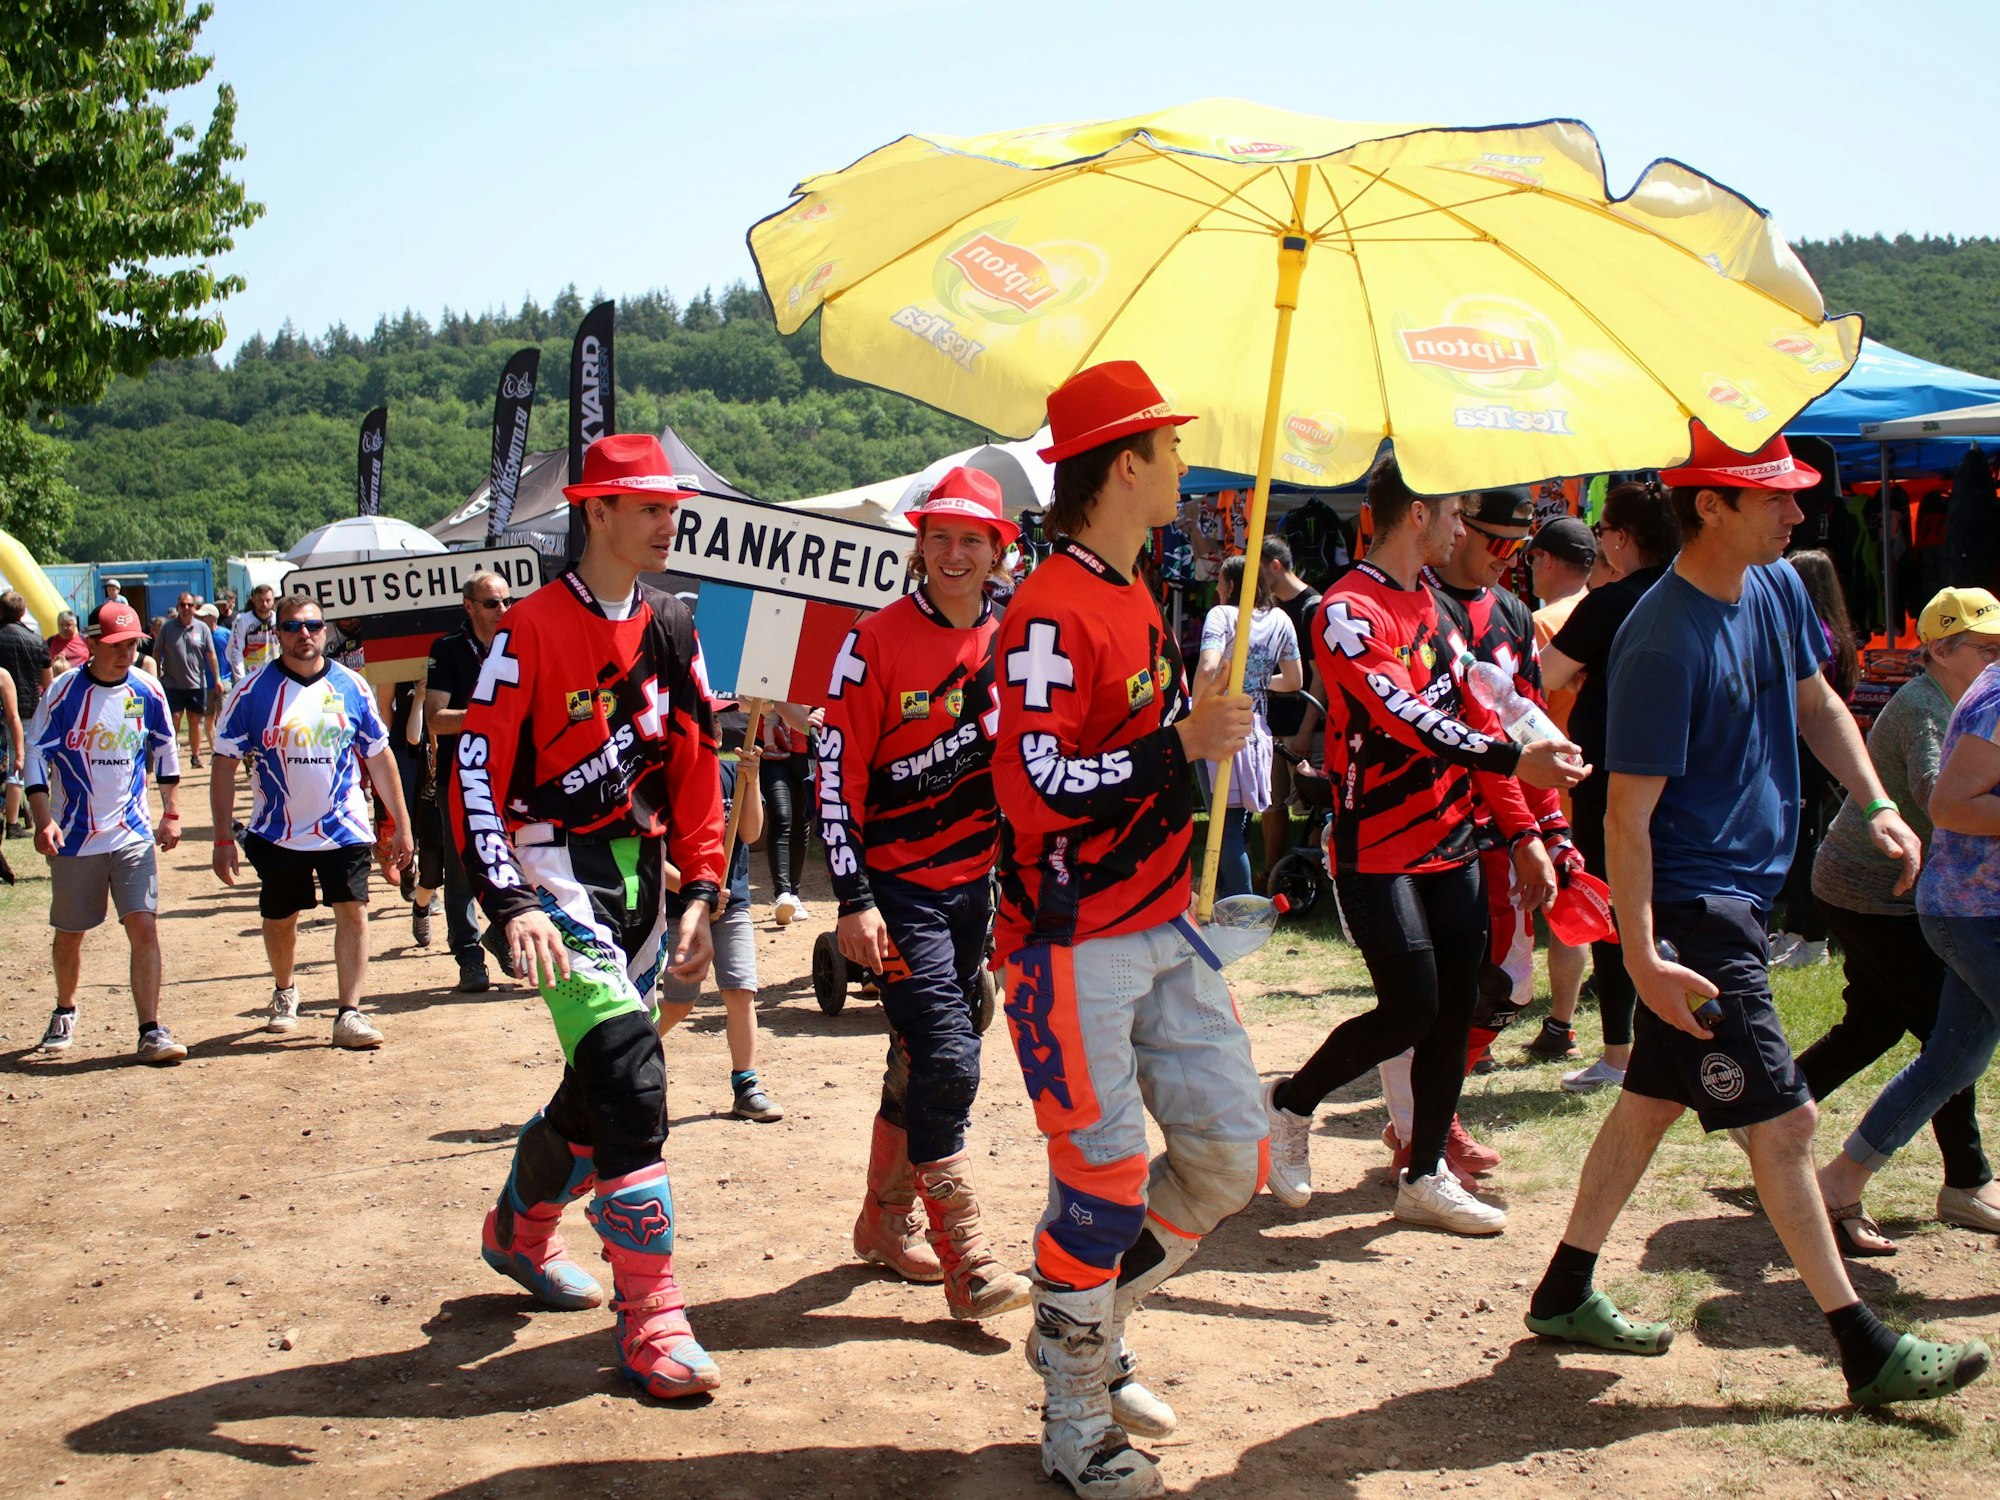 Das Team der Schweiz mit roten Hüten. Ein Fahrer trägt einen gelben Schirm.